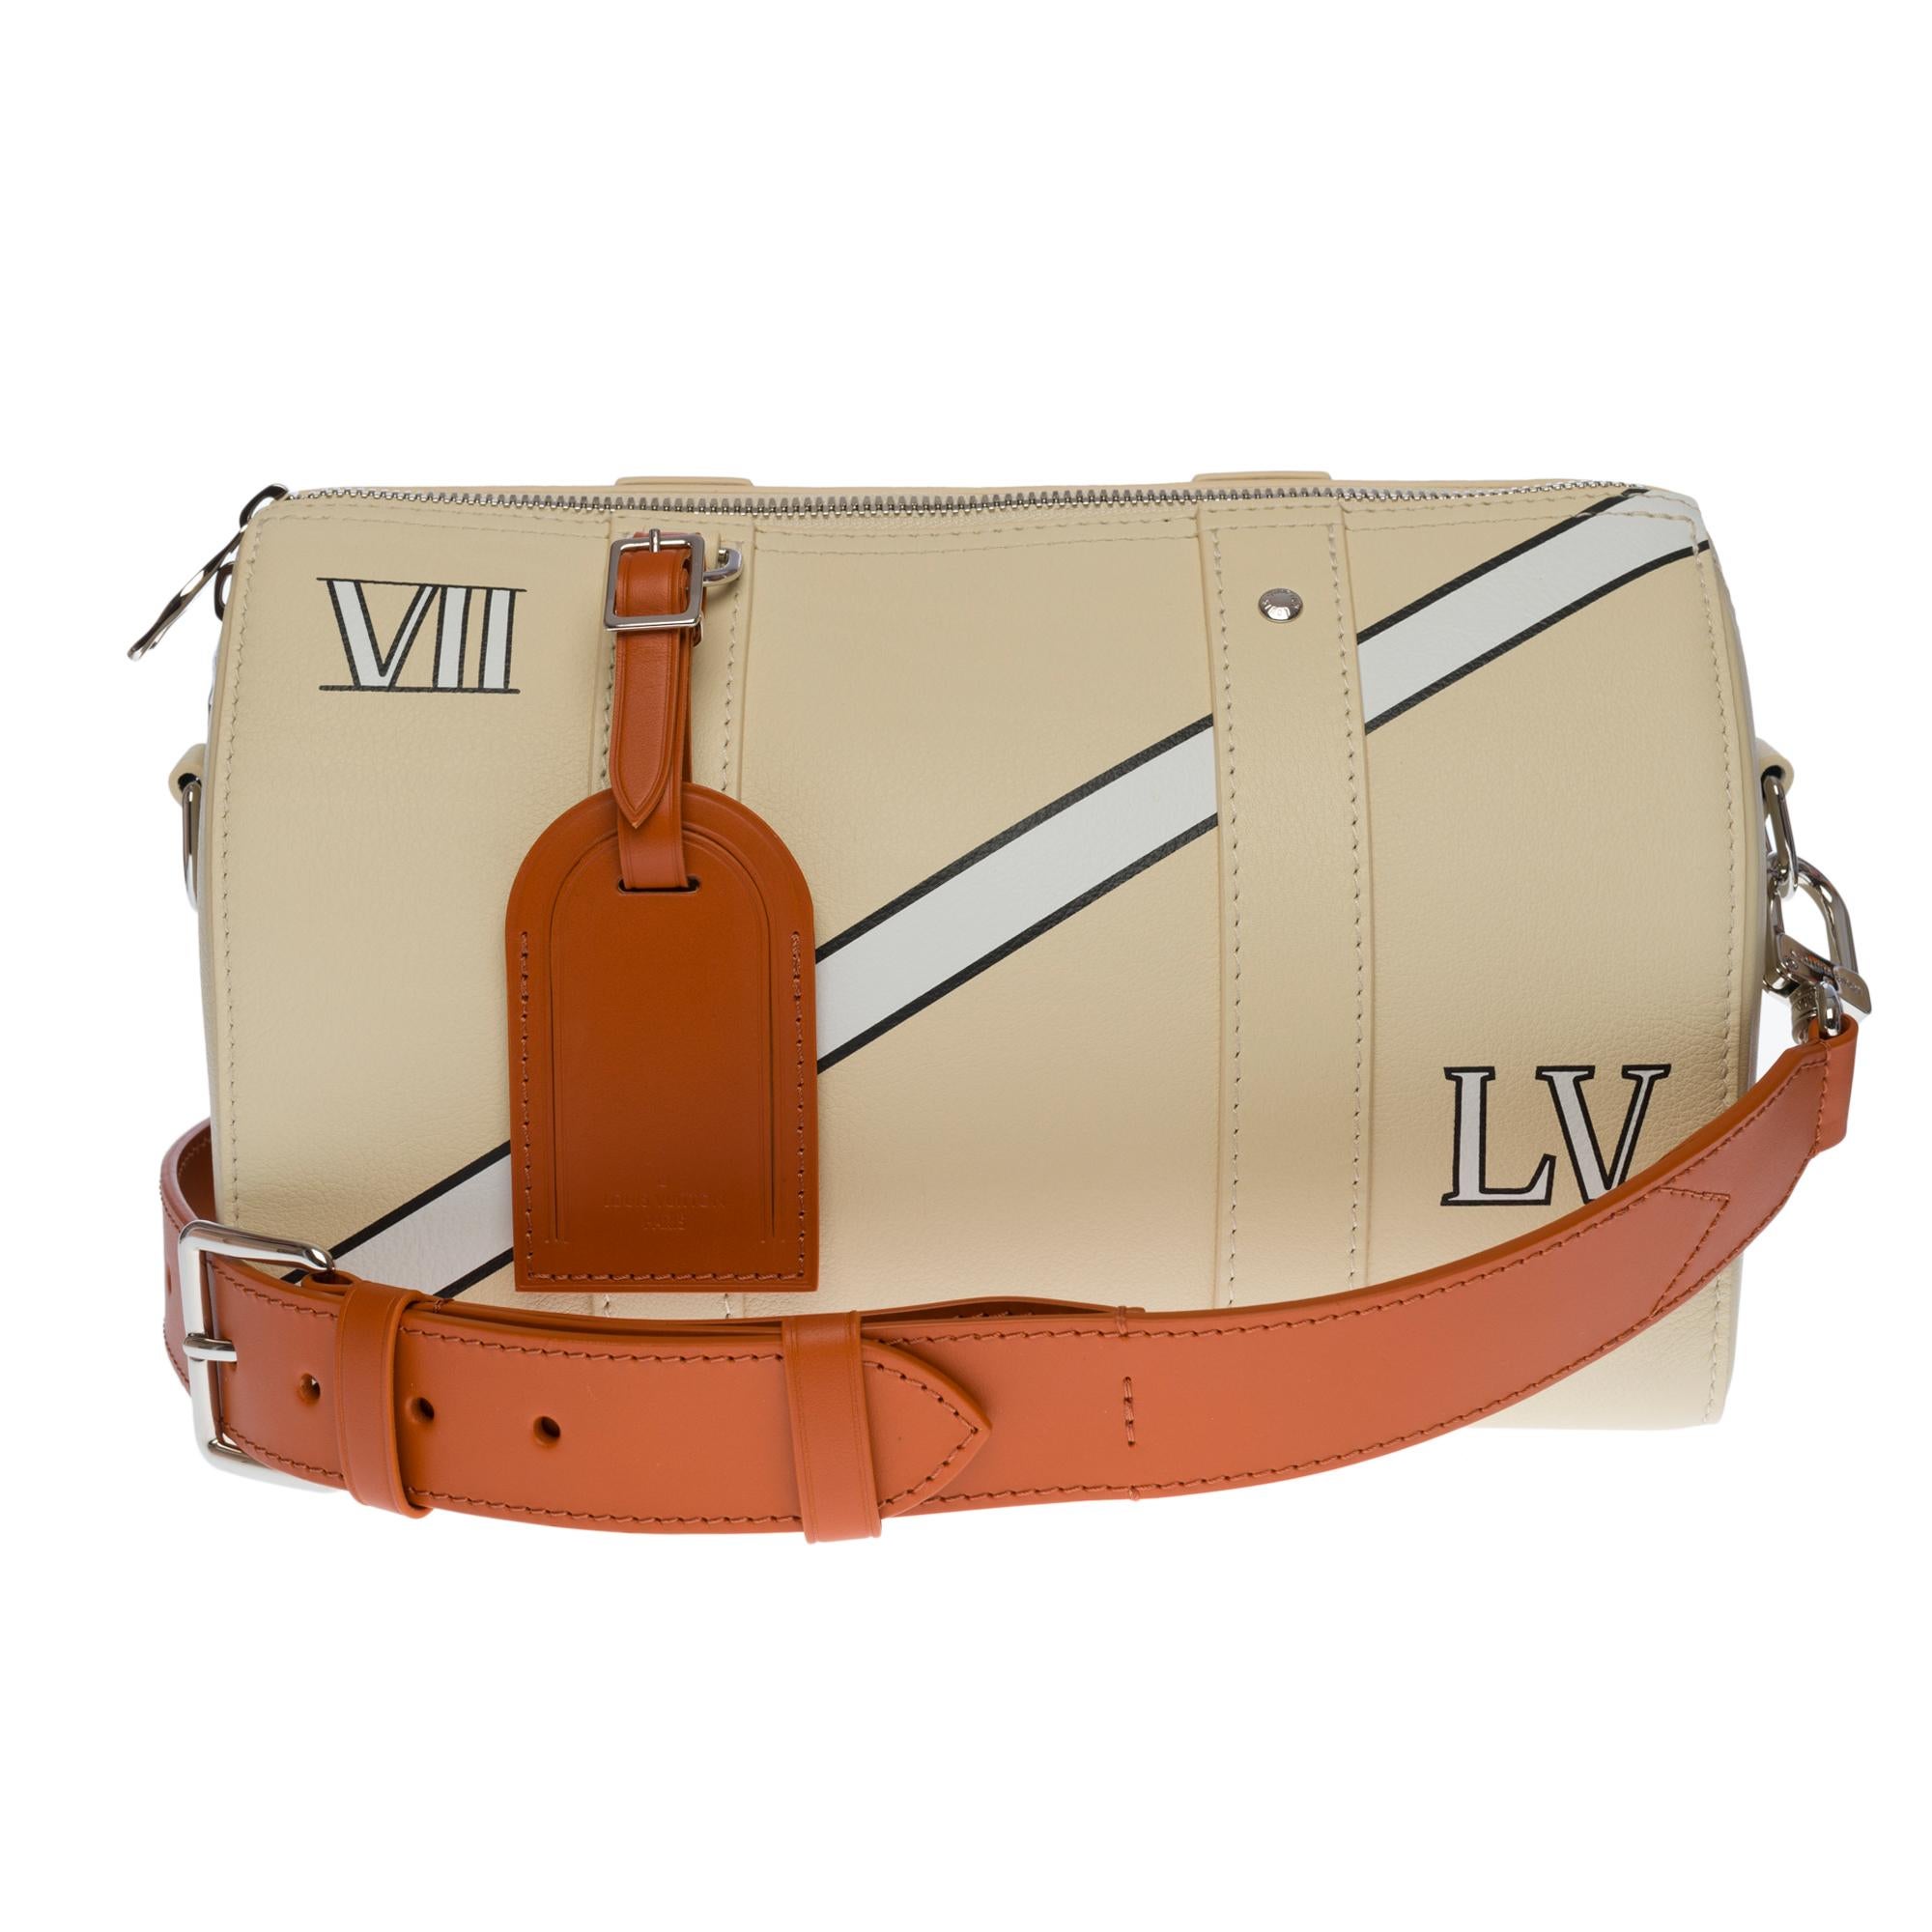 Louis Vuitton Virgil Abloh LV Initials Belt Reversible Distorted